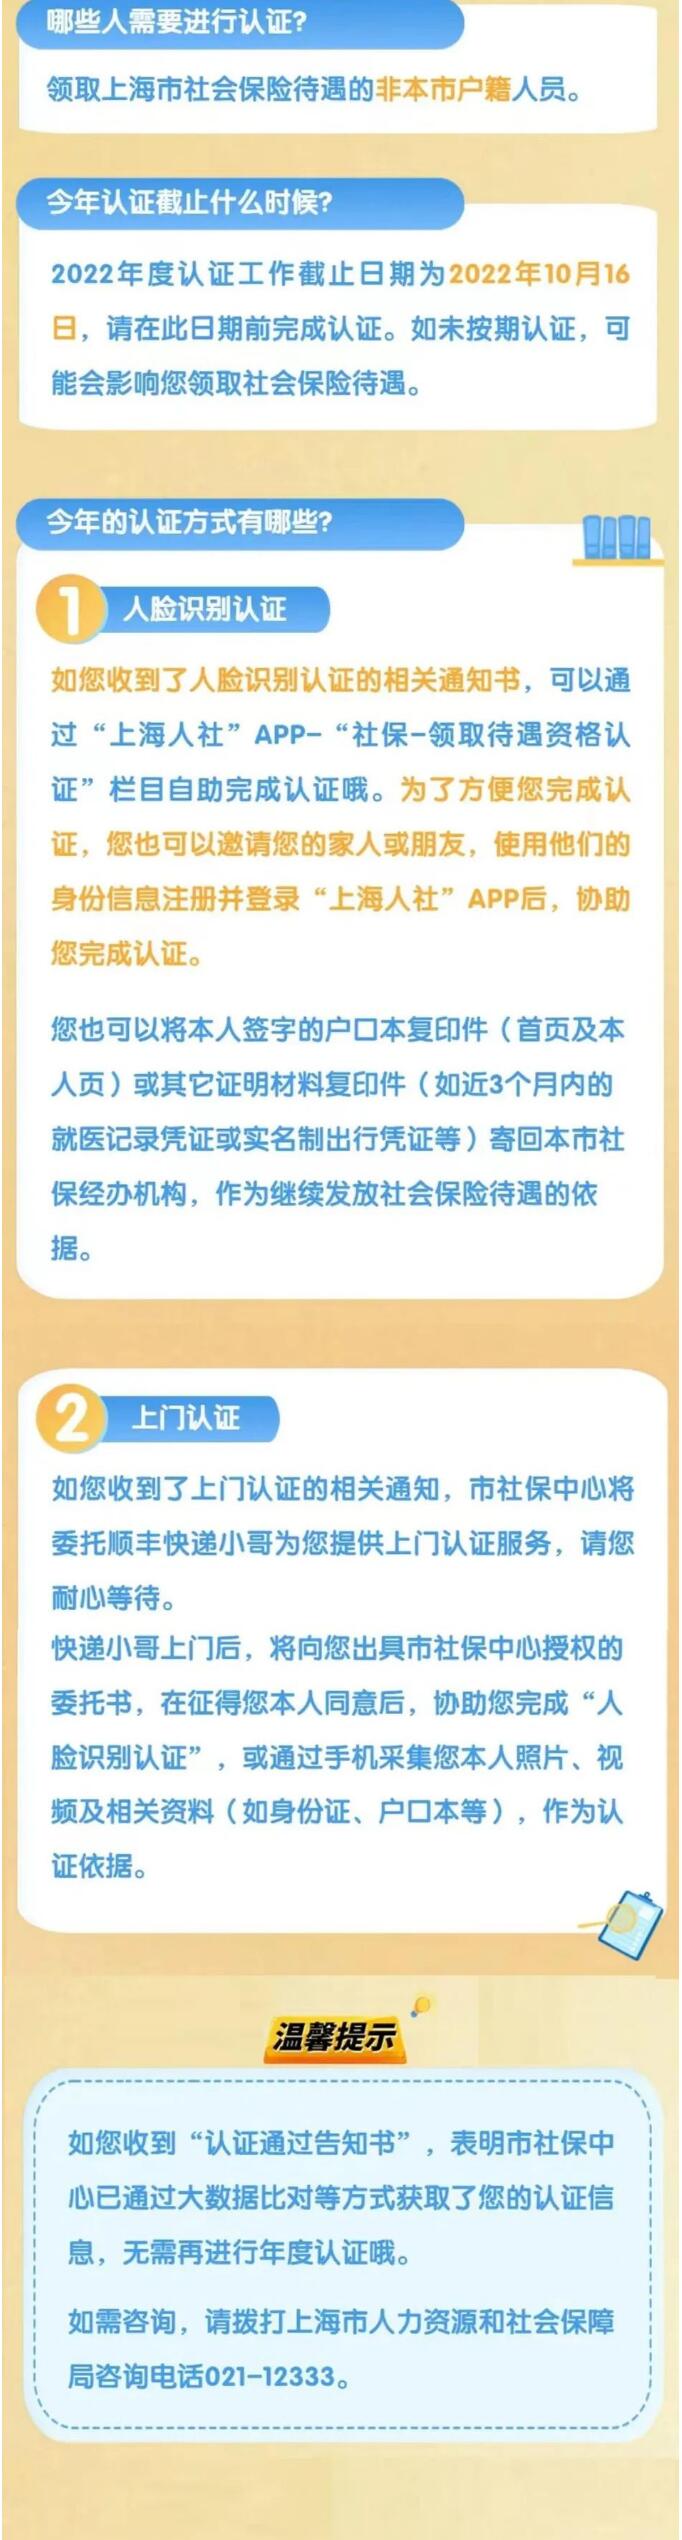 上海市2022年度领取社会保险待遇资格认证工作已经启动啦!